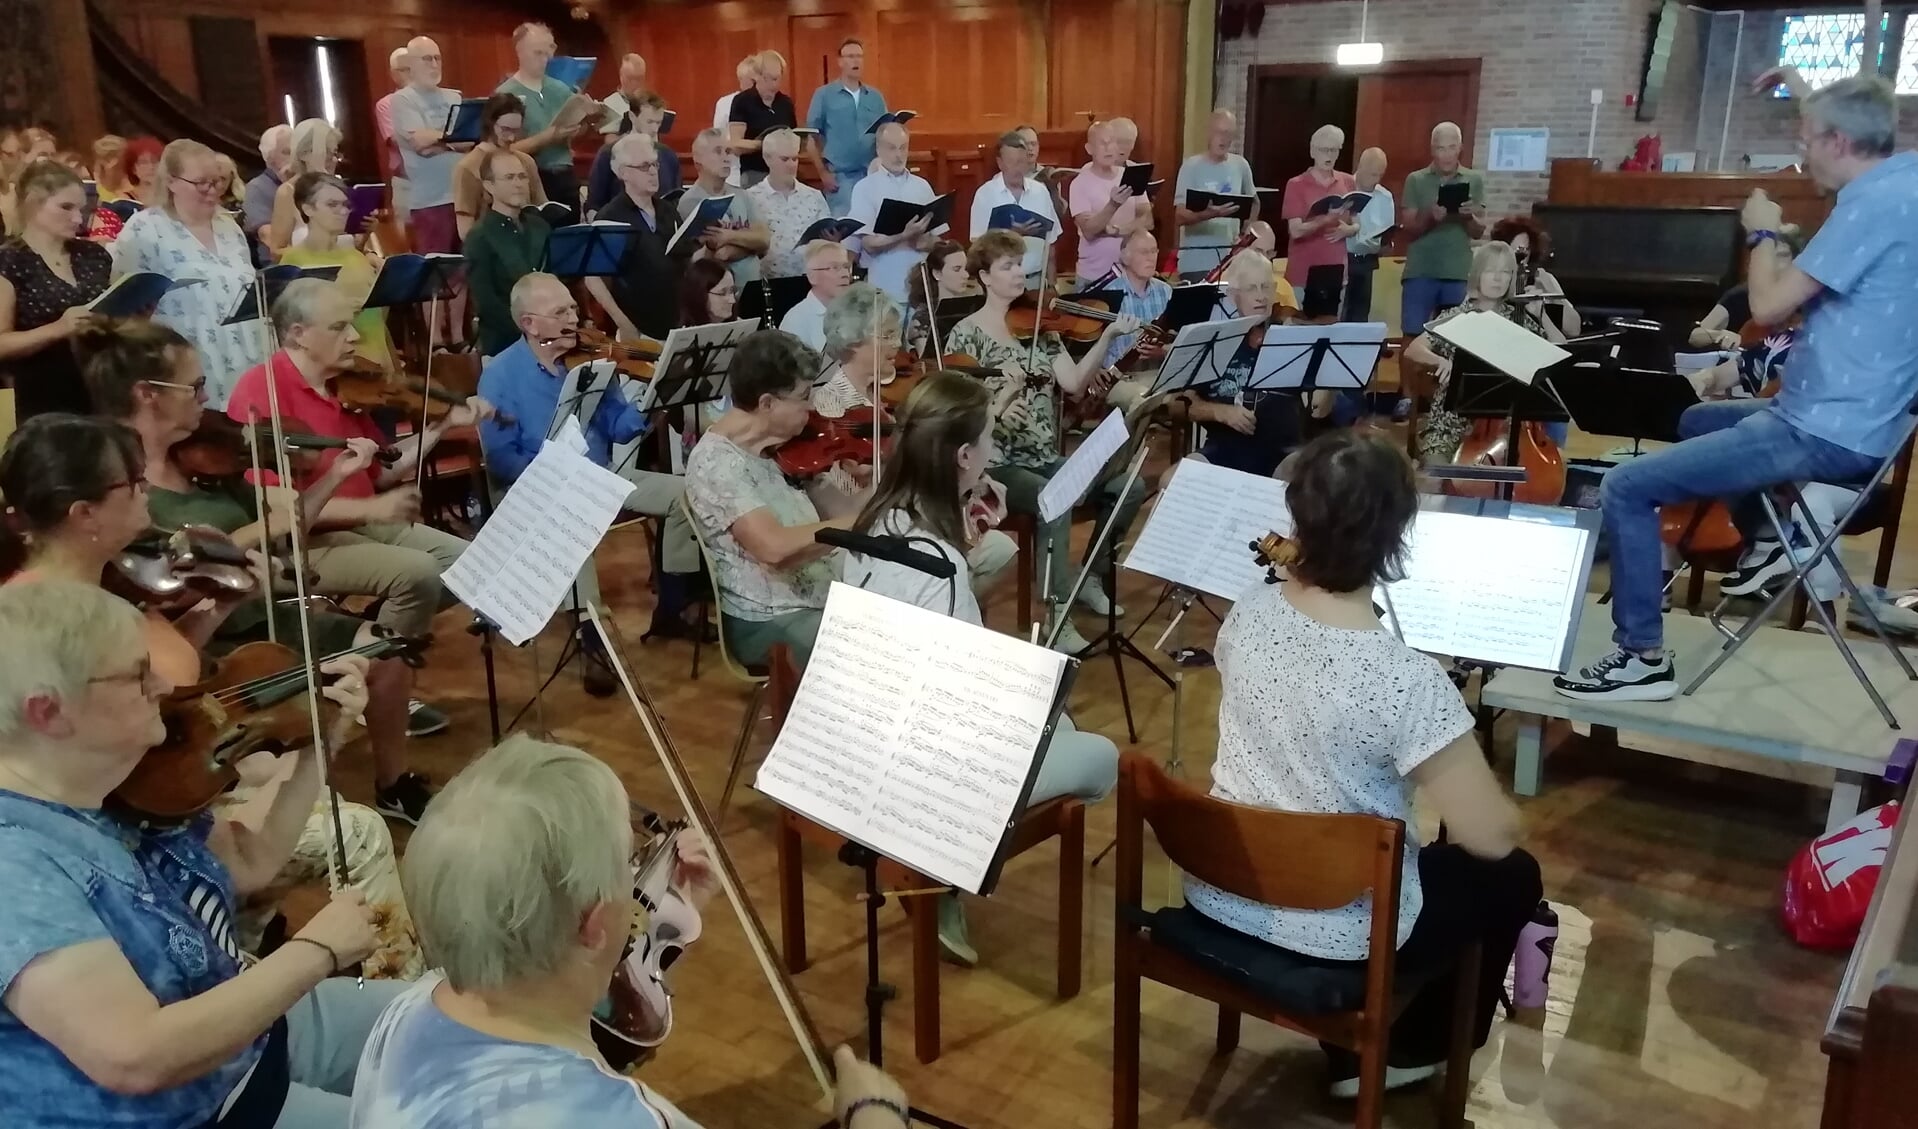 Repetitie van koor en orkest. Foto: Karel Christiaanse